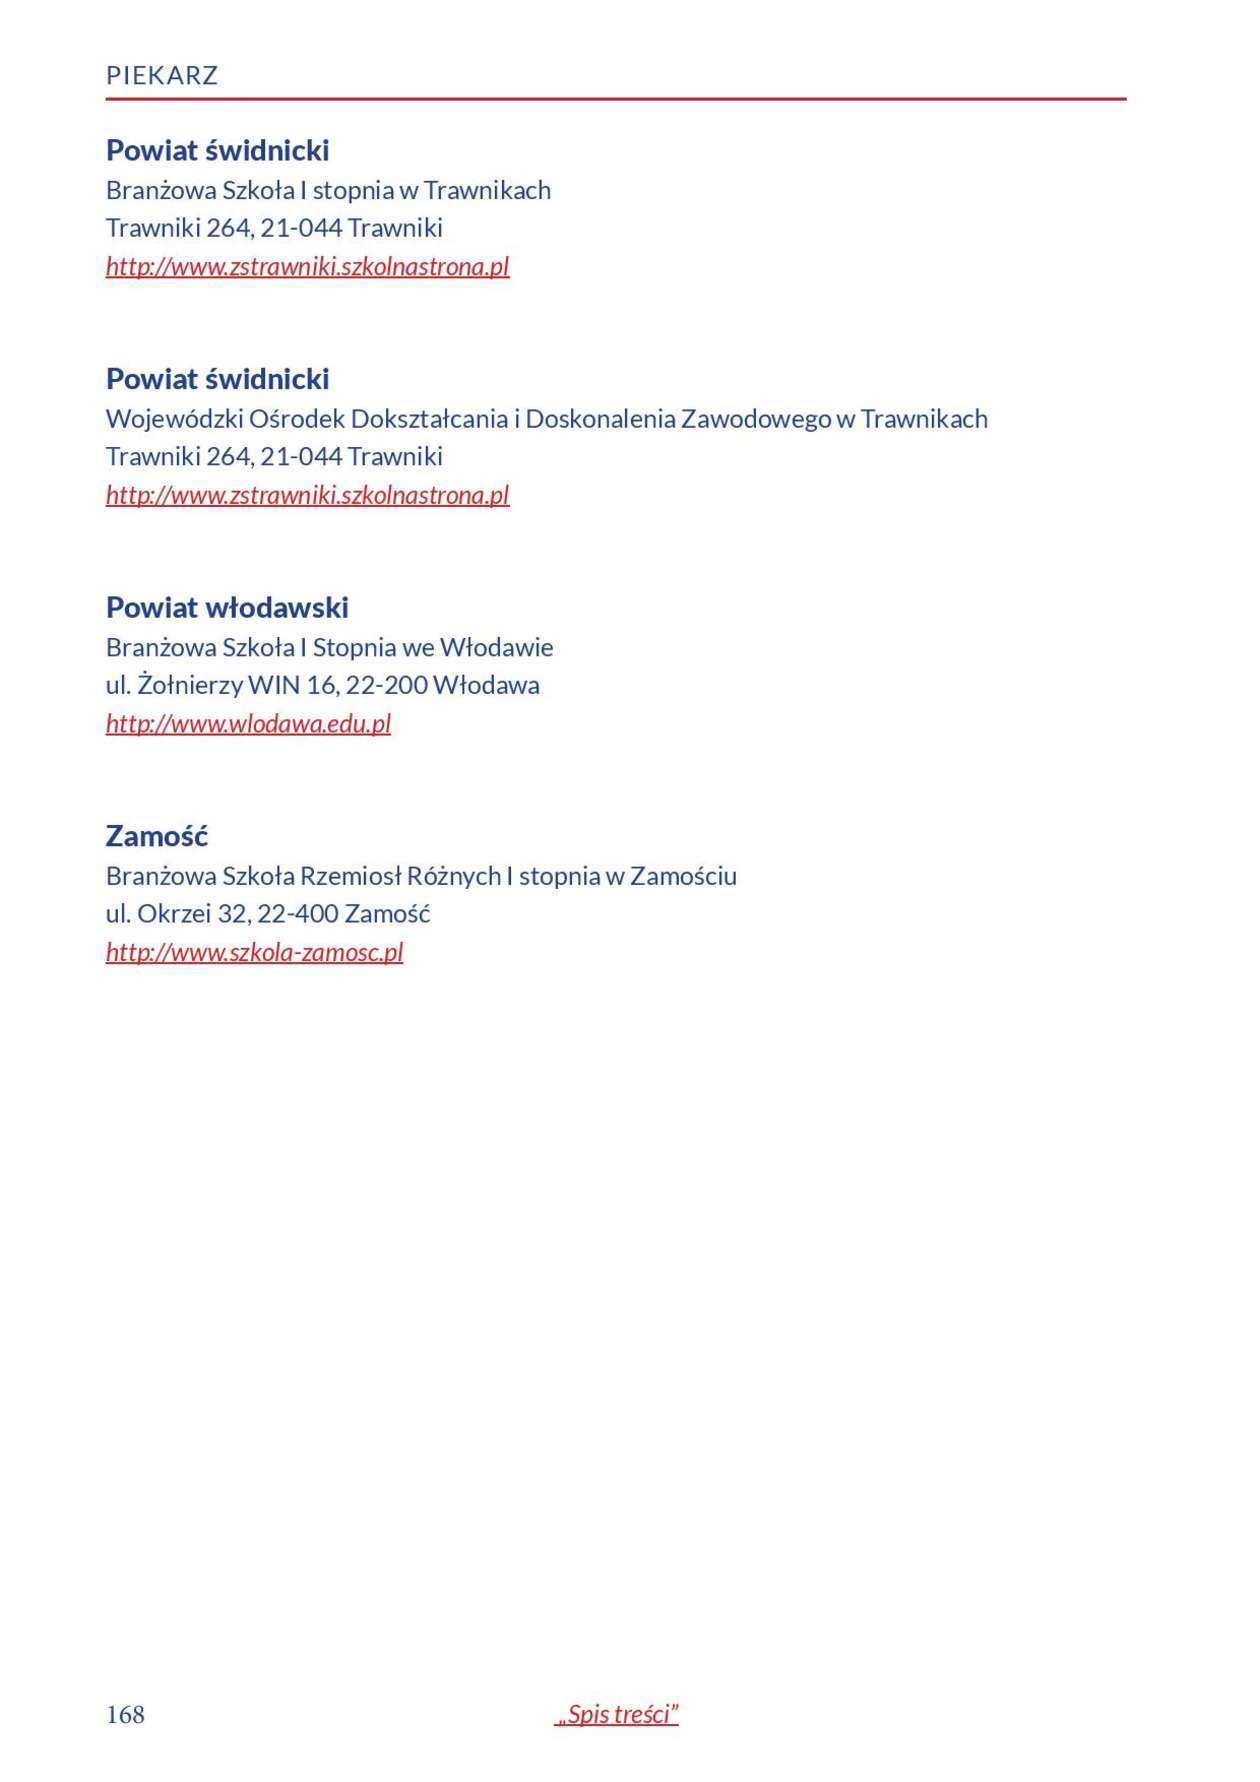  Informator o zawodach 2018/2019 w woj. lubelskim. Część 1 (zdjęcie 166) - Autor: Kuratorium Oświaty w Lublinie